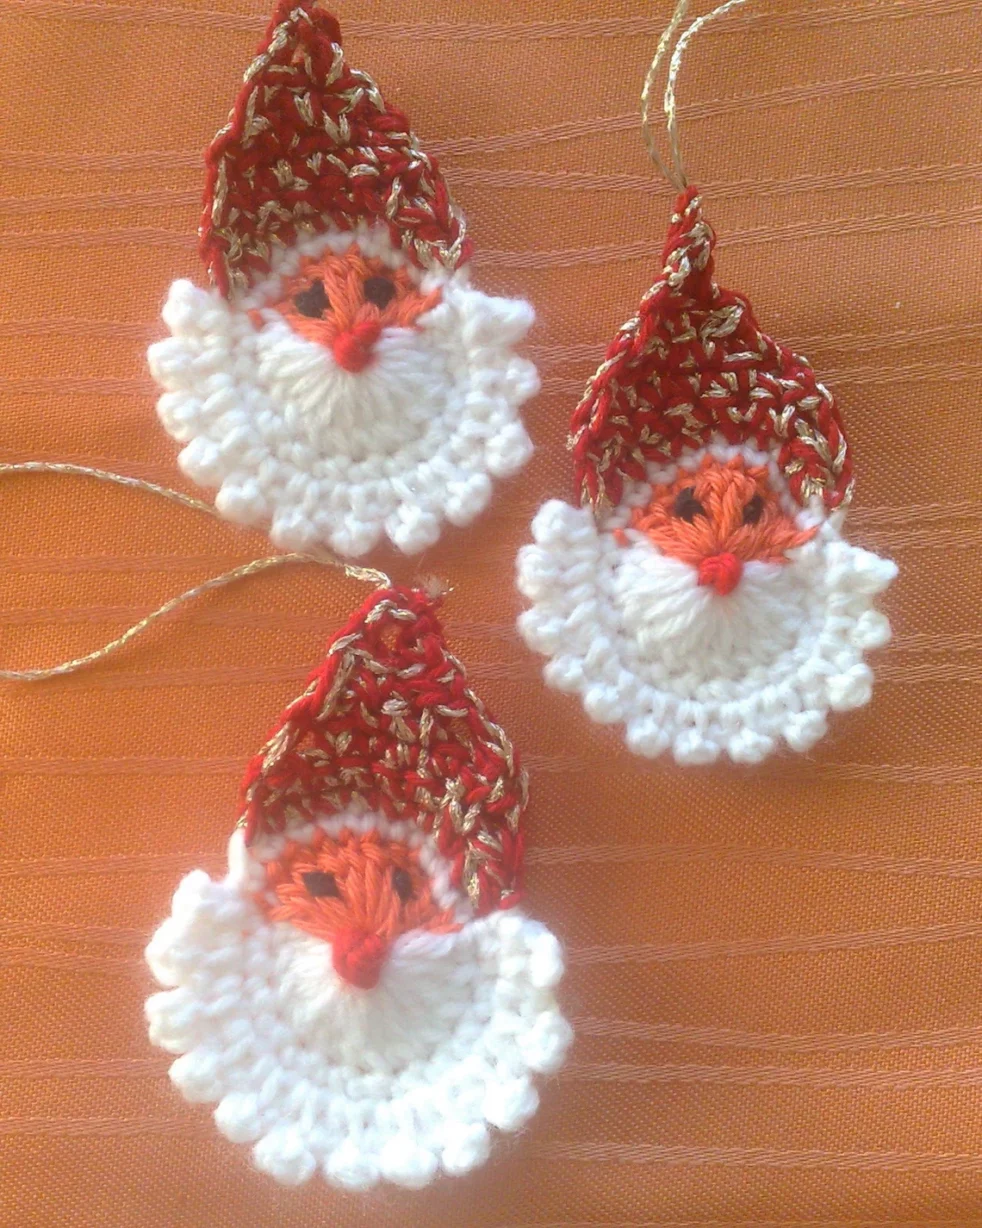 Gehäkelte Weihnachtsornamente - MyCrocheting